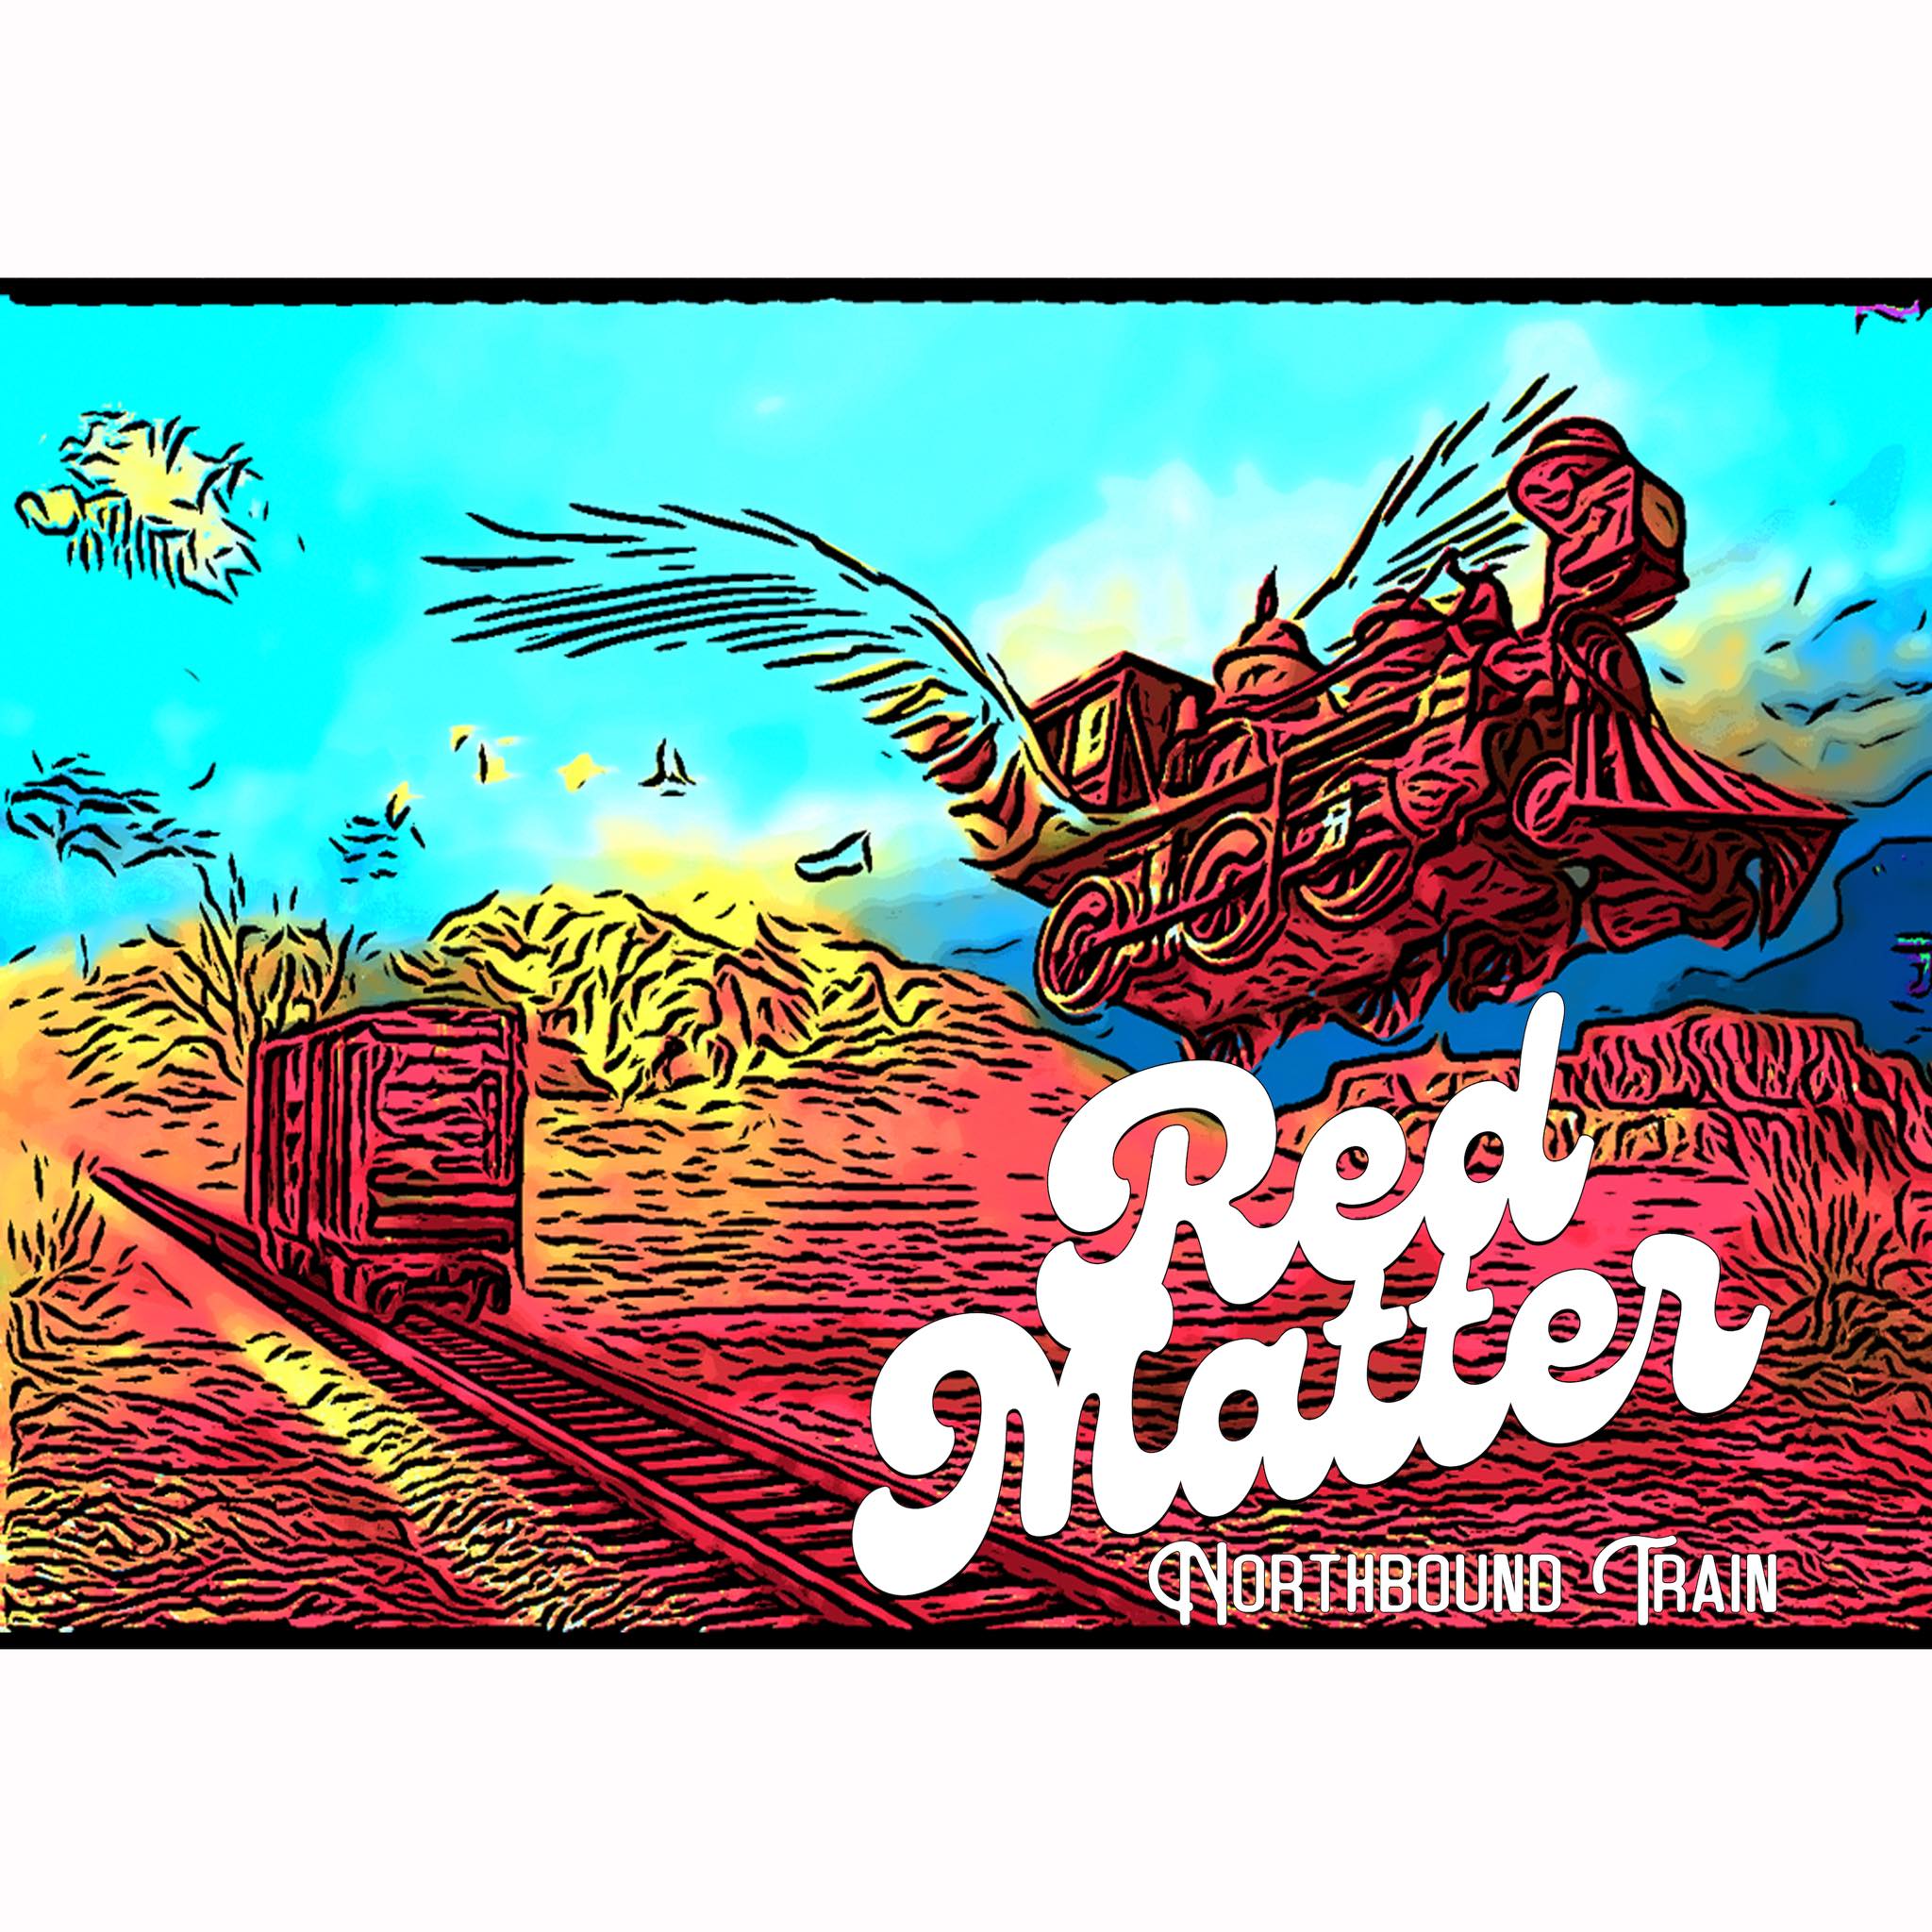 Red Matter ‘Northbound Train’ album artwork